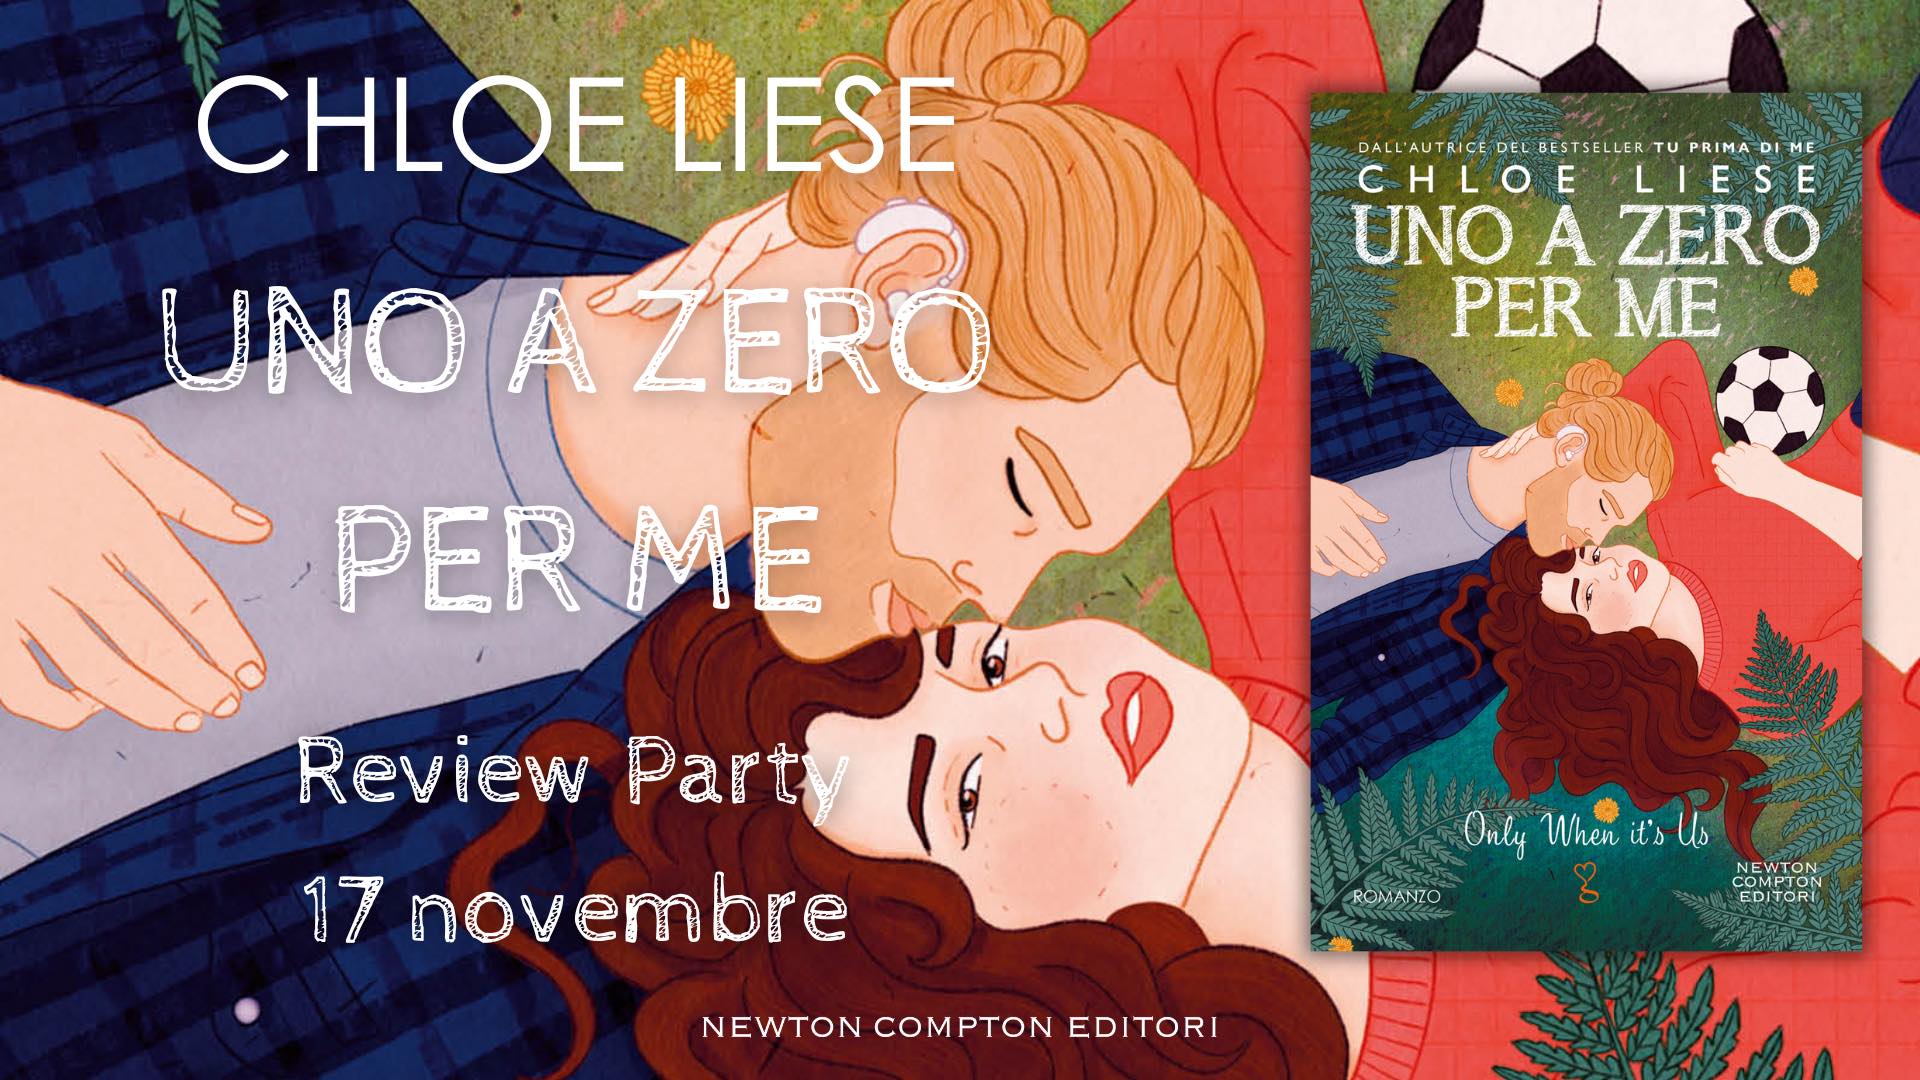 Review Party: Uno a zero per me di Chloe Liese - Romanticamente Fantasy Sito